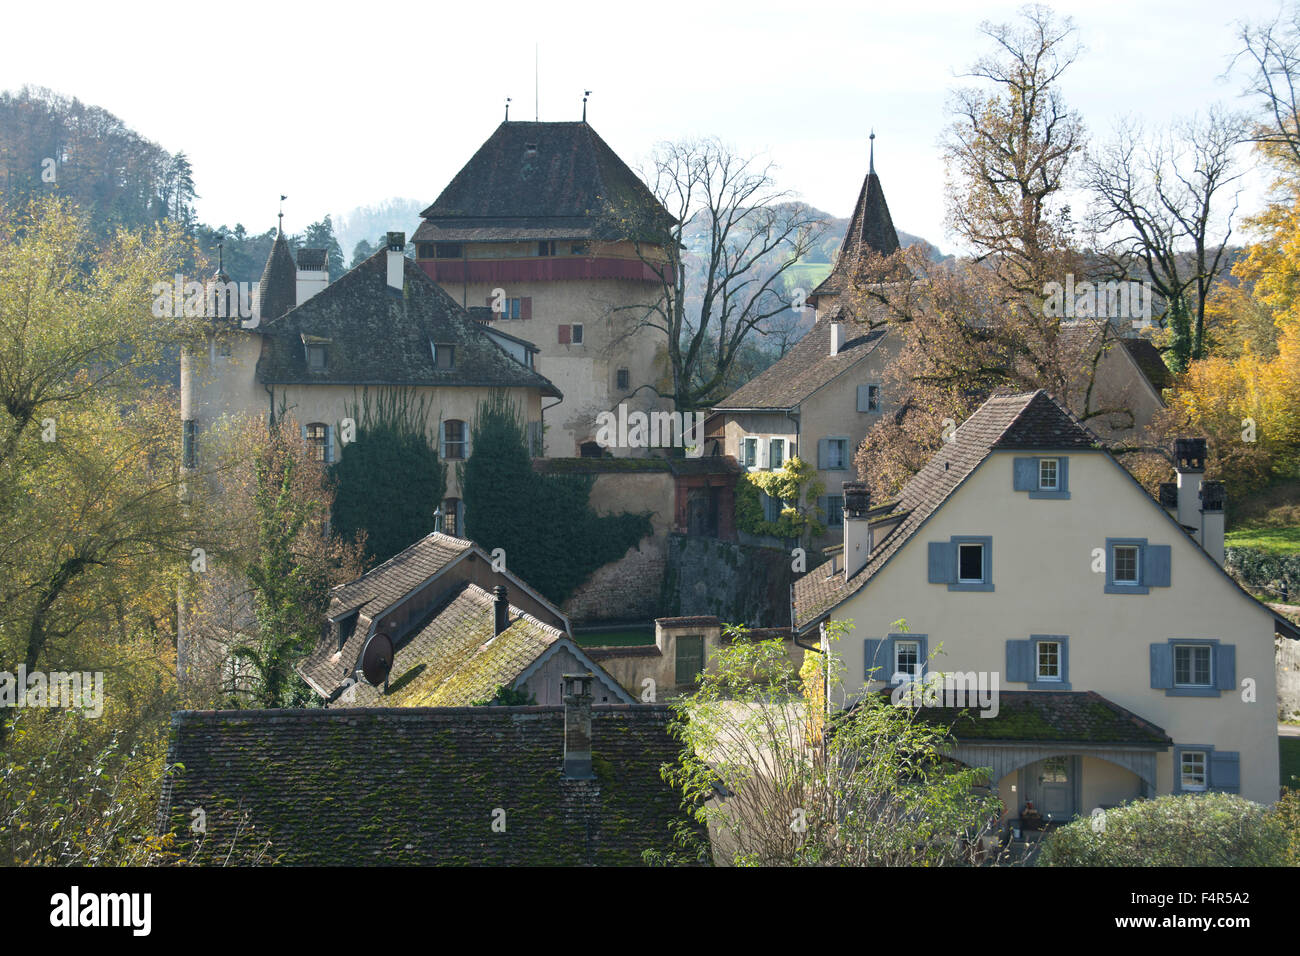 Switzerland, Europe, Baselland, Bubendorf, Wildenstein, castle, lock, autumn Stock Photo